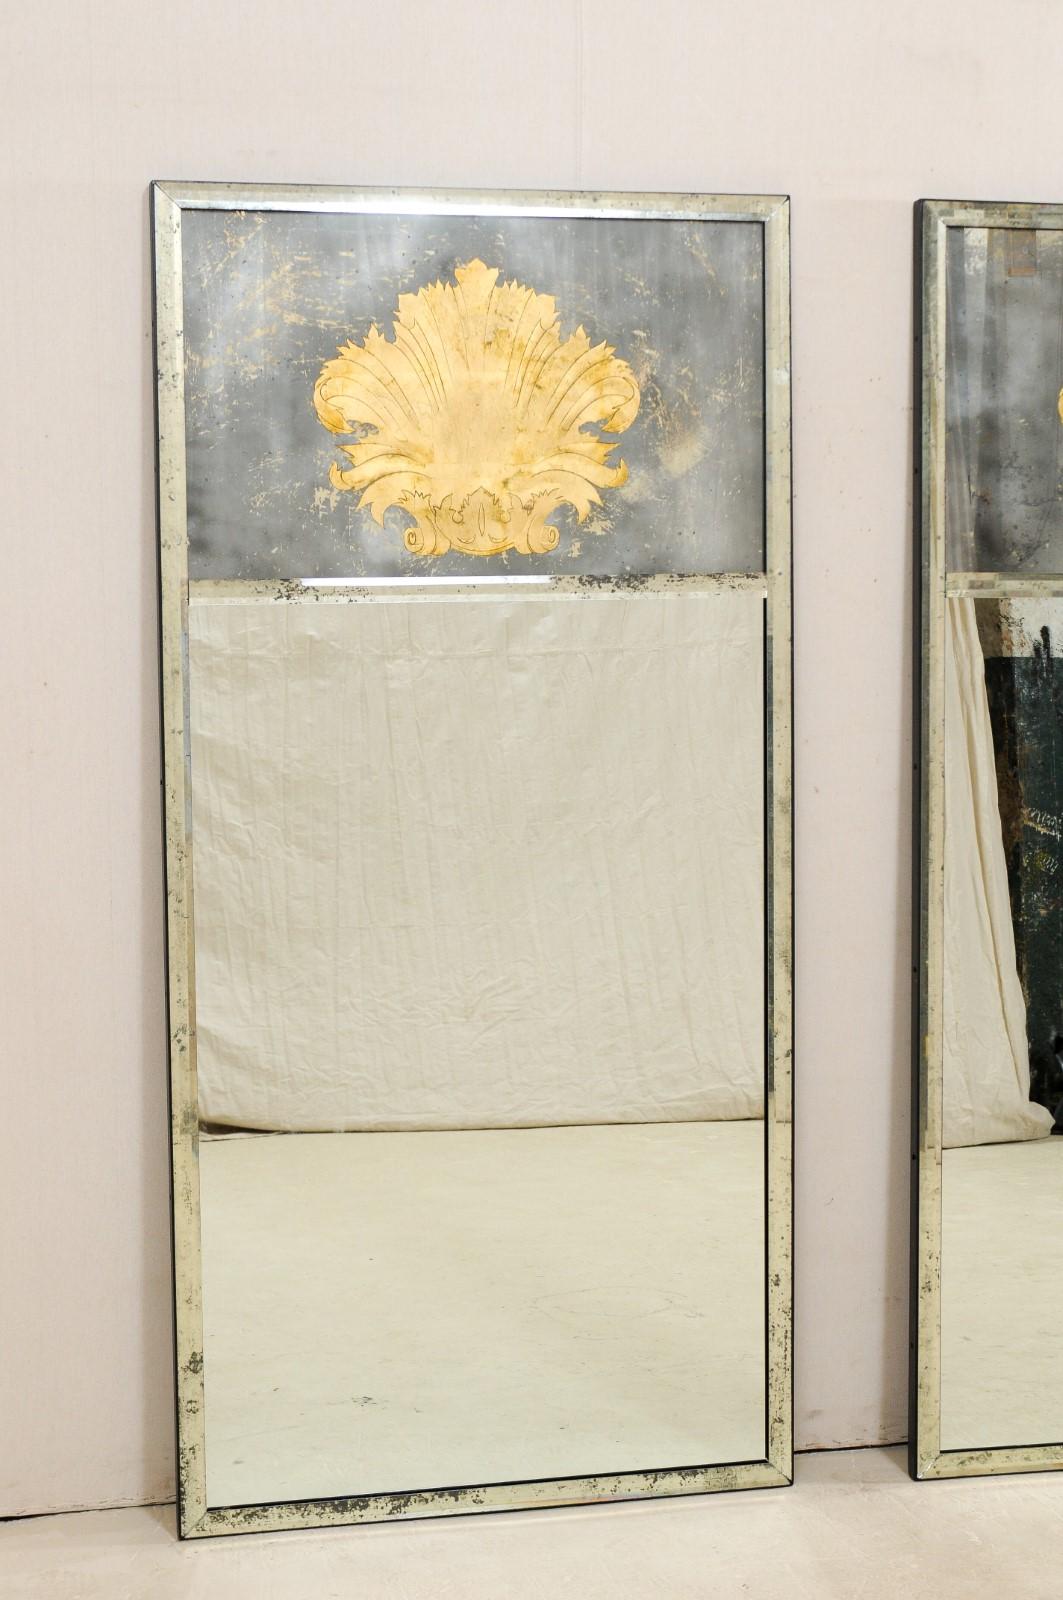 Paire de miroirs artisanaux avec des accents de feuilles d'acanthe en éventail en verre églomisé. Ces miroirs artisanaux de fabrication américaine, de forme rectangulaire et d'une hauteur d'environ 6,5 pieds, présentent deux panneaux (le miroir